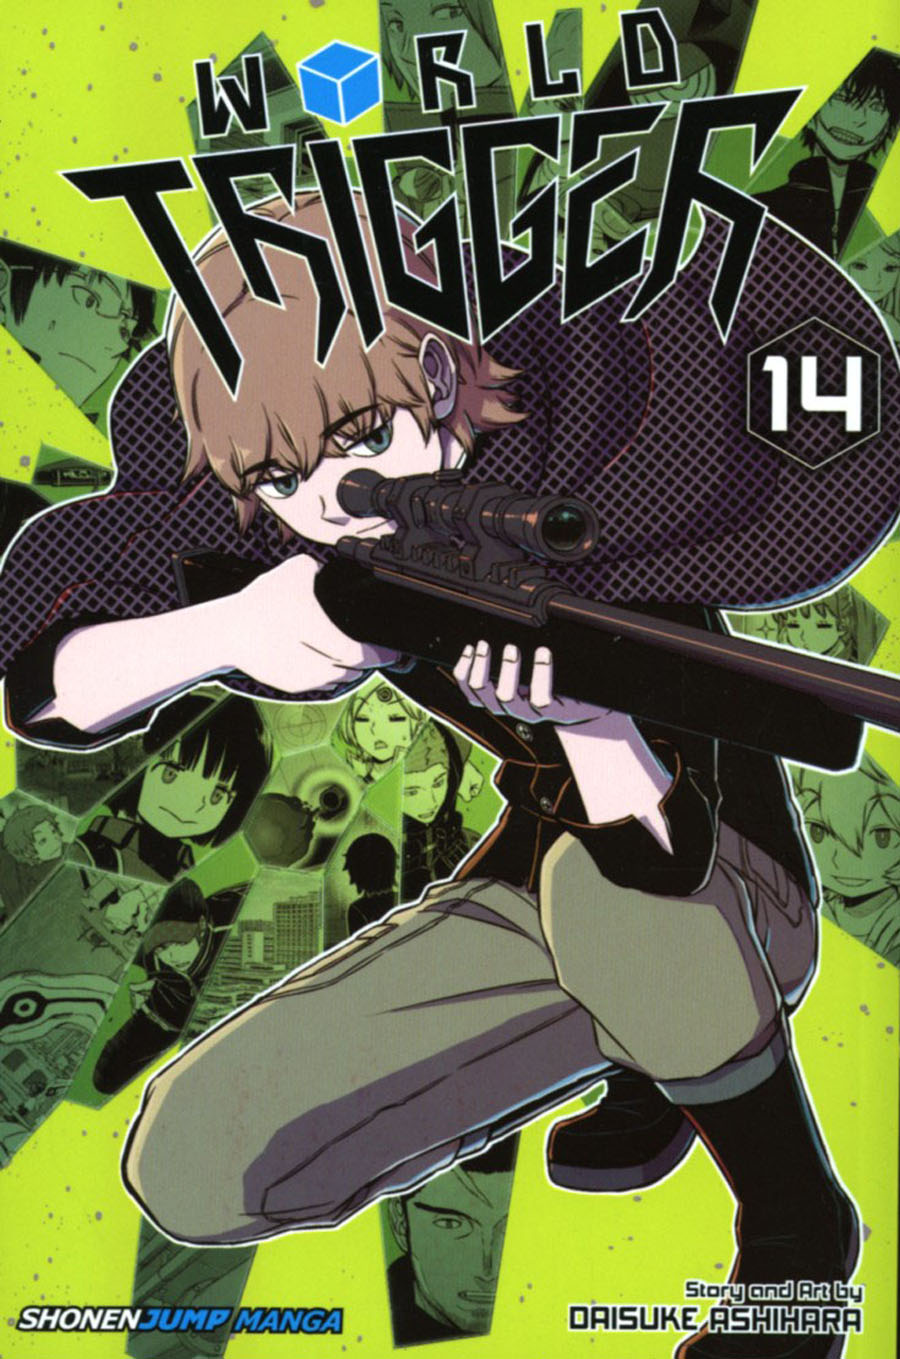 World Trigger Vol 14 TP